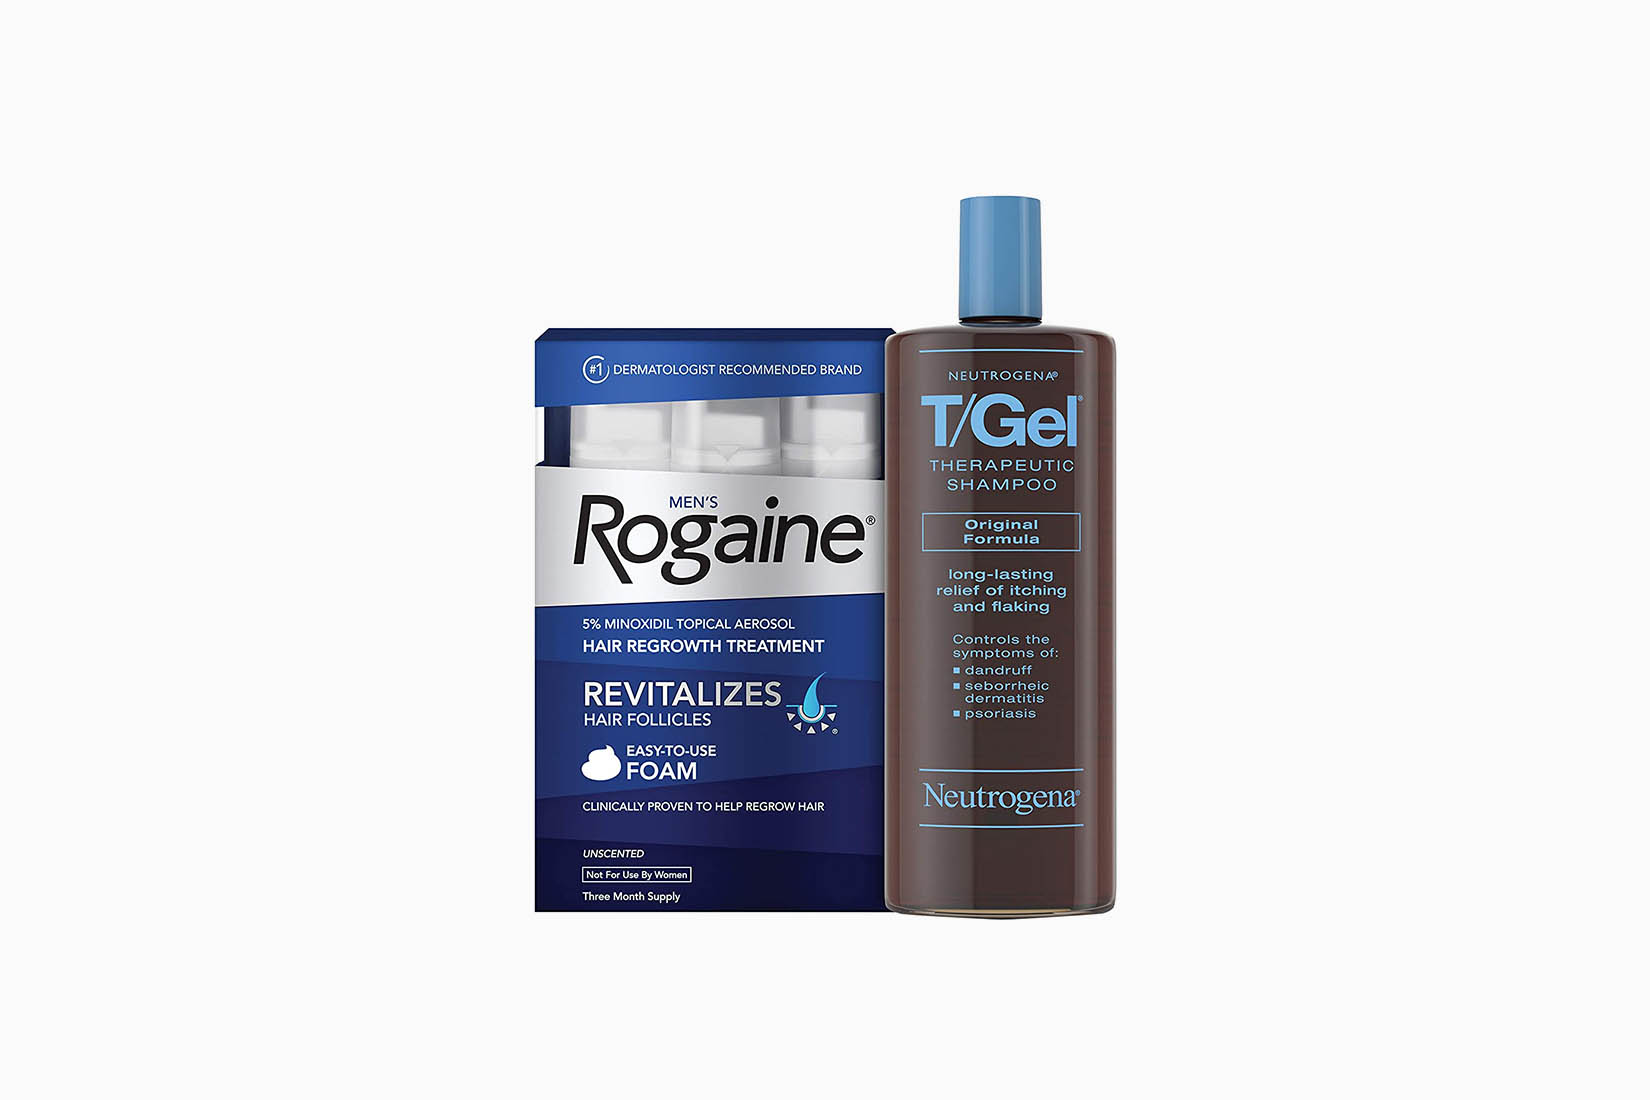 Meilleur shampooing pour hommes Pura Dor Rogaine - Luxe Digital